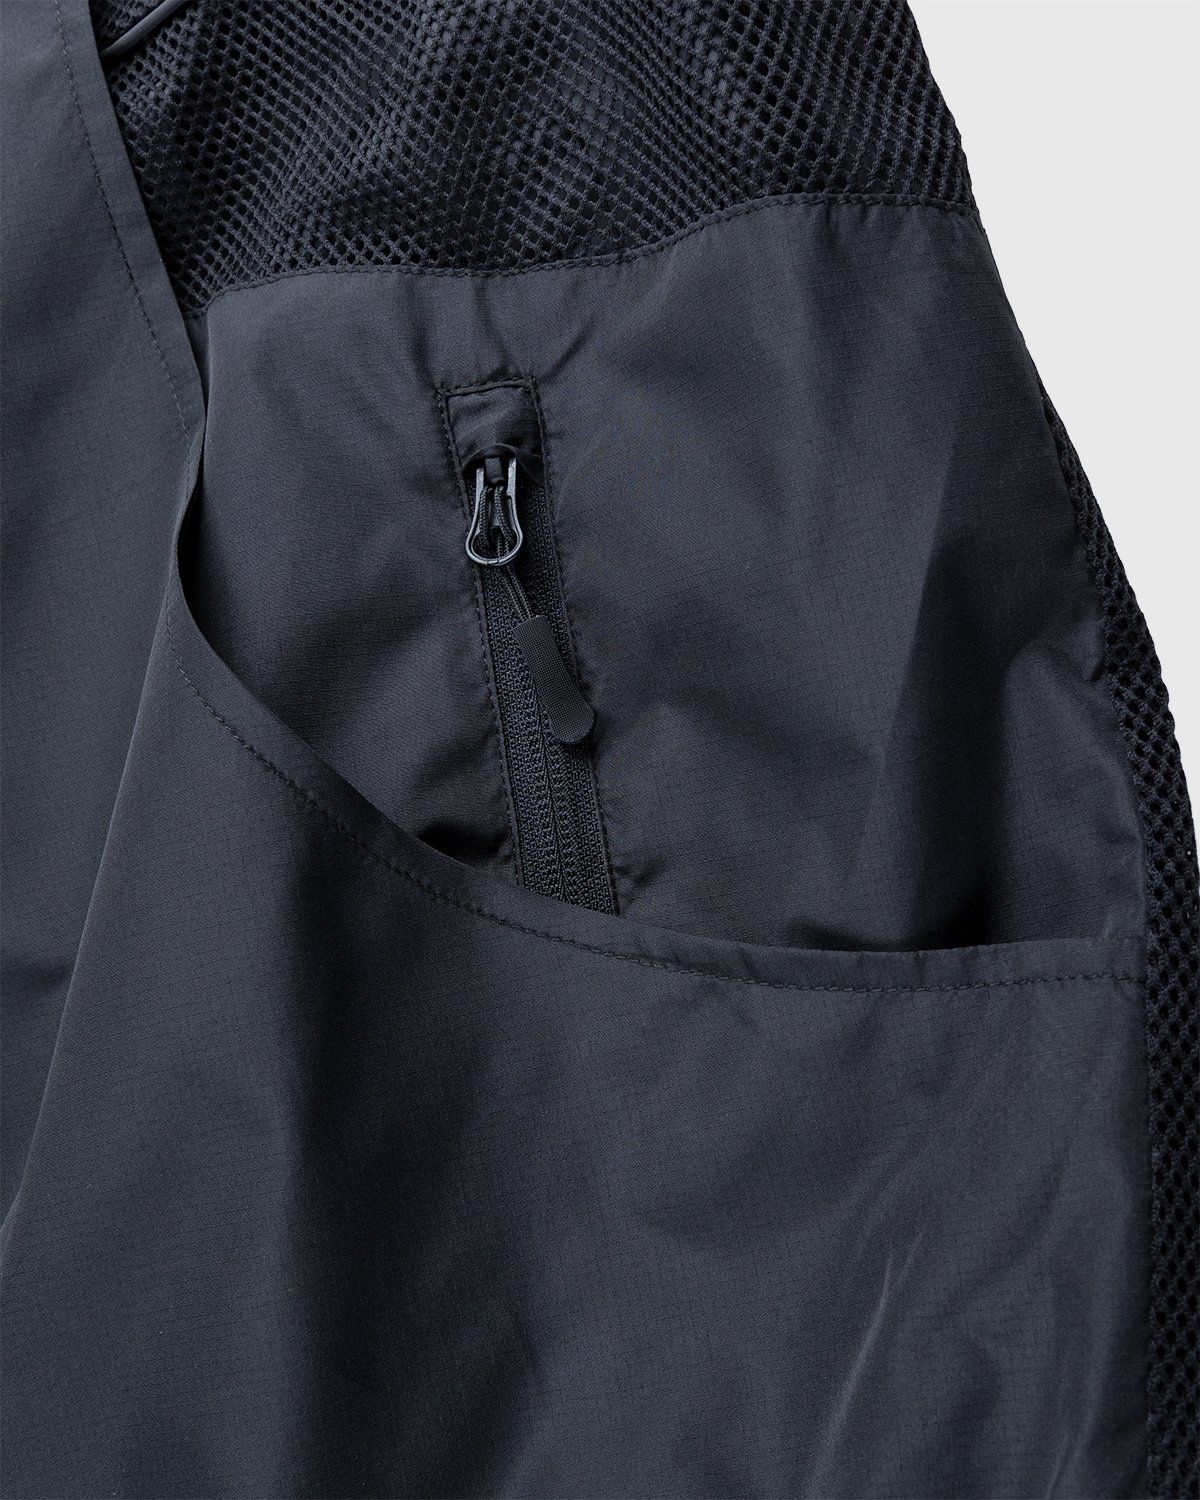 Umbro x Sucux – Zenomorph Jacket Black - Jackets - Black - Image 6